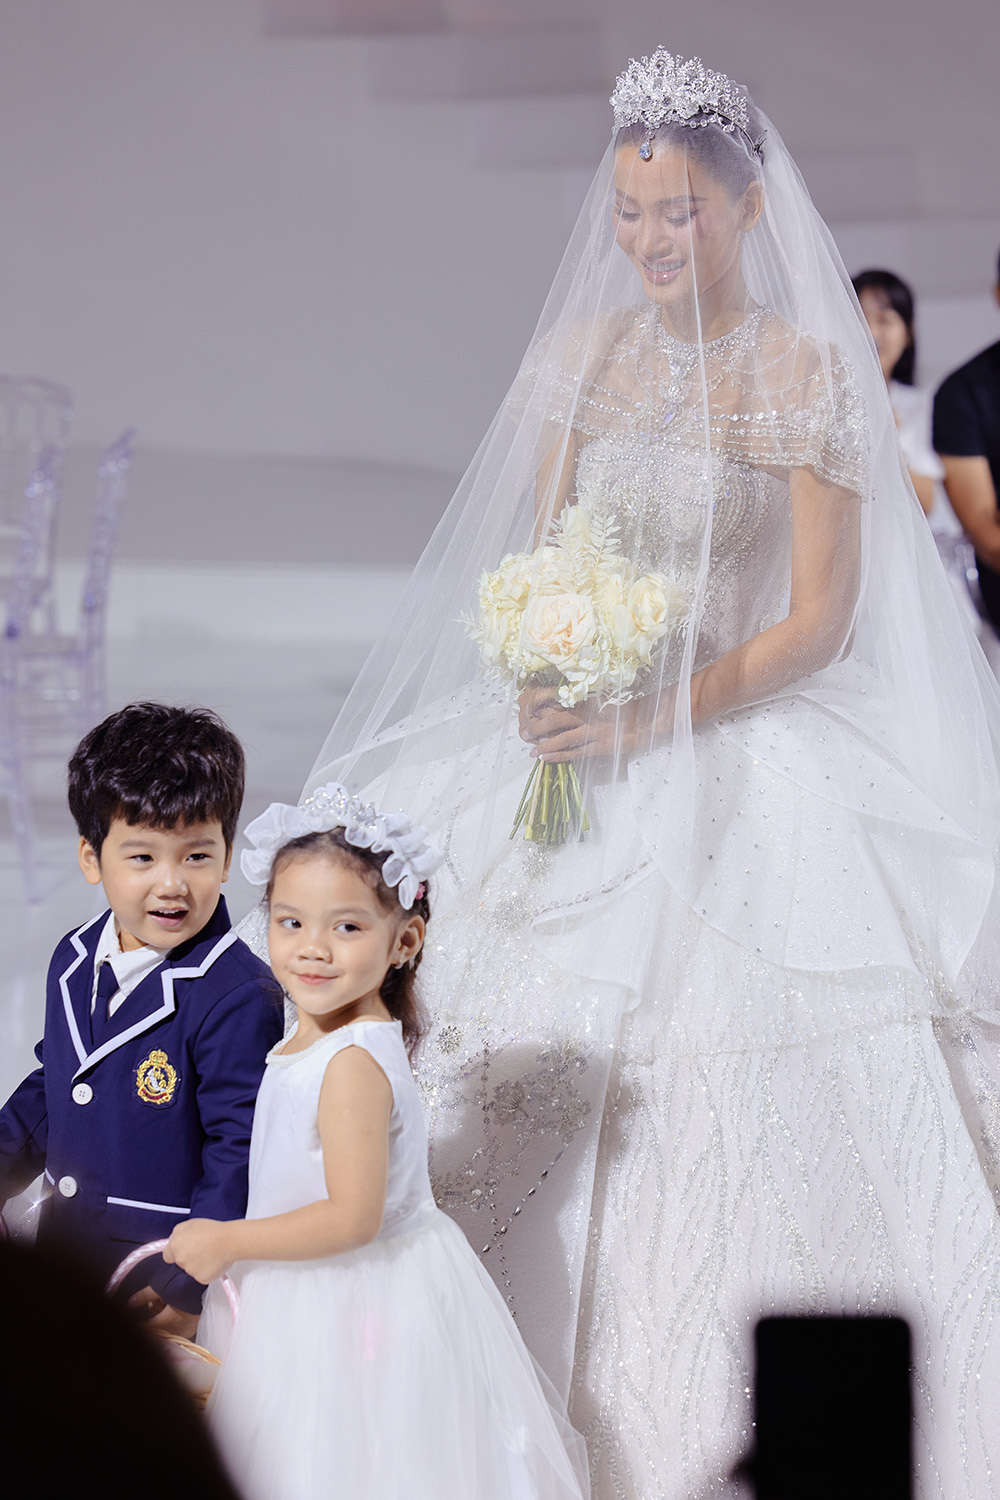 Á hậu Hương Ly cùng dàn người đẹp lộng lẫy trên sàn diễn thời trang áo cưới - Ảnh 2.